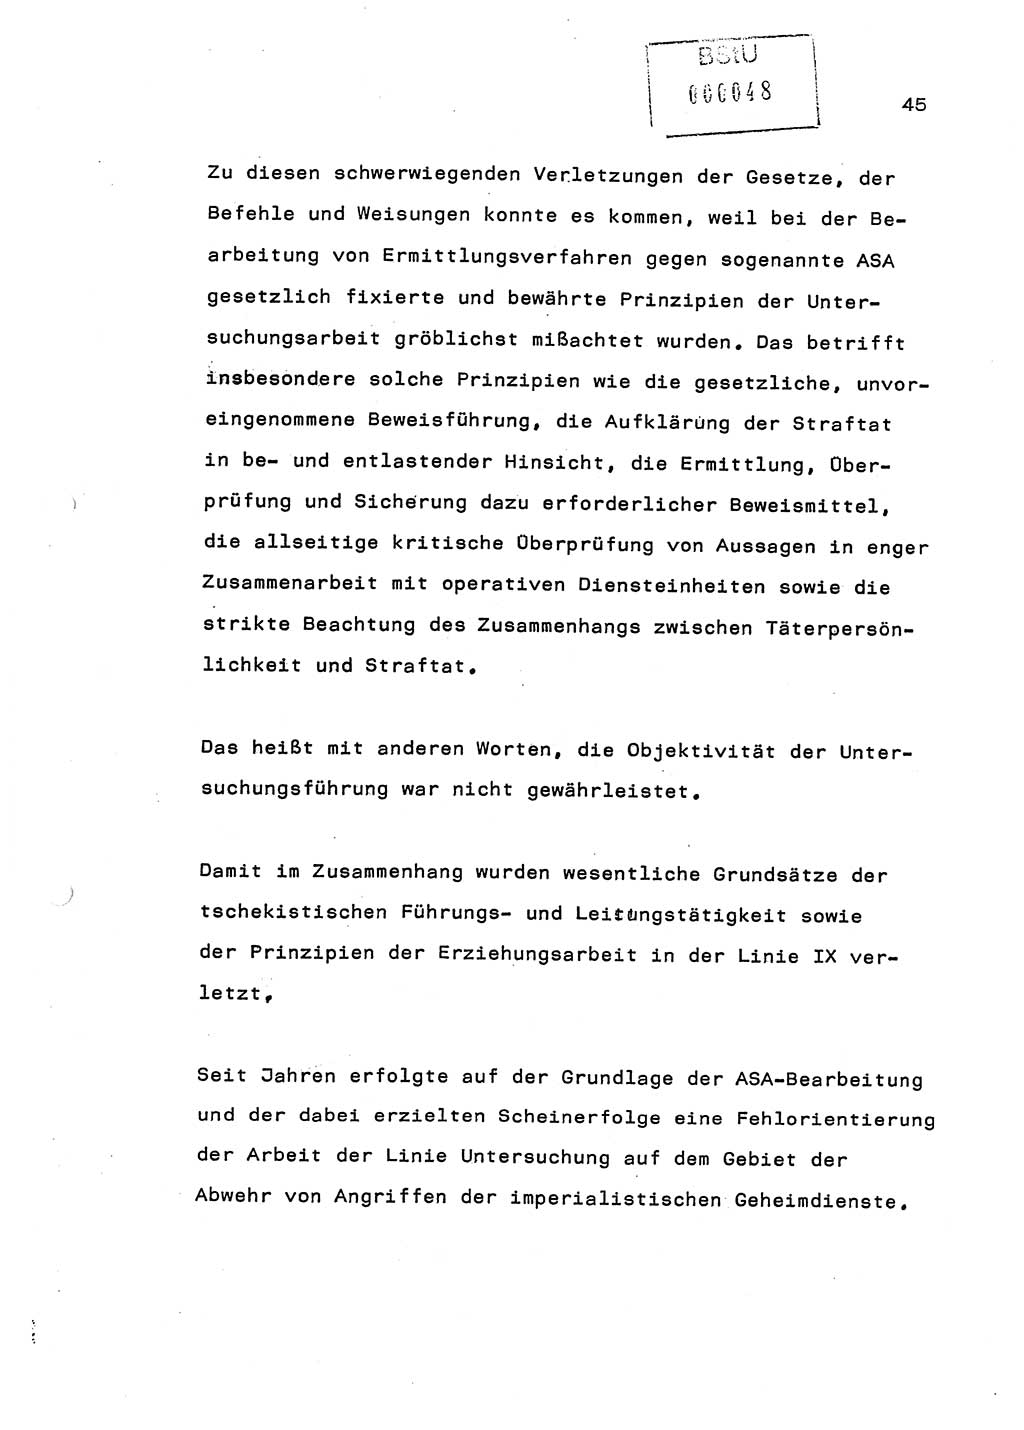 Referat (Generaloberst Erich Mielke) auf der Zentralen Dienstkonferenz am 24.5.1979 [Ministerium für Staatssicherheit (MfS), Deutsche Demokratische Republik (DDR), Der Minister], Berlin 1979, Seite 45 (Ref. DK DDR MfS Min. /79 1979, S. 45)